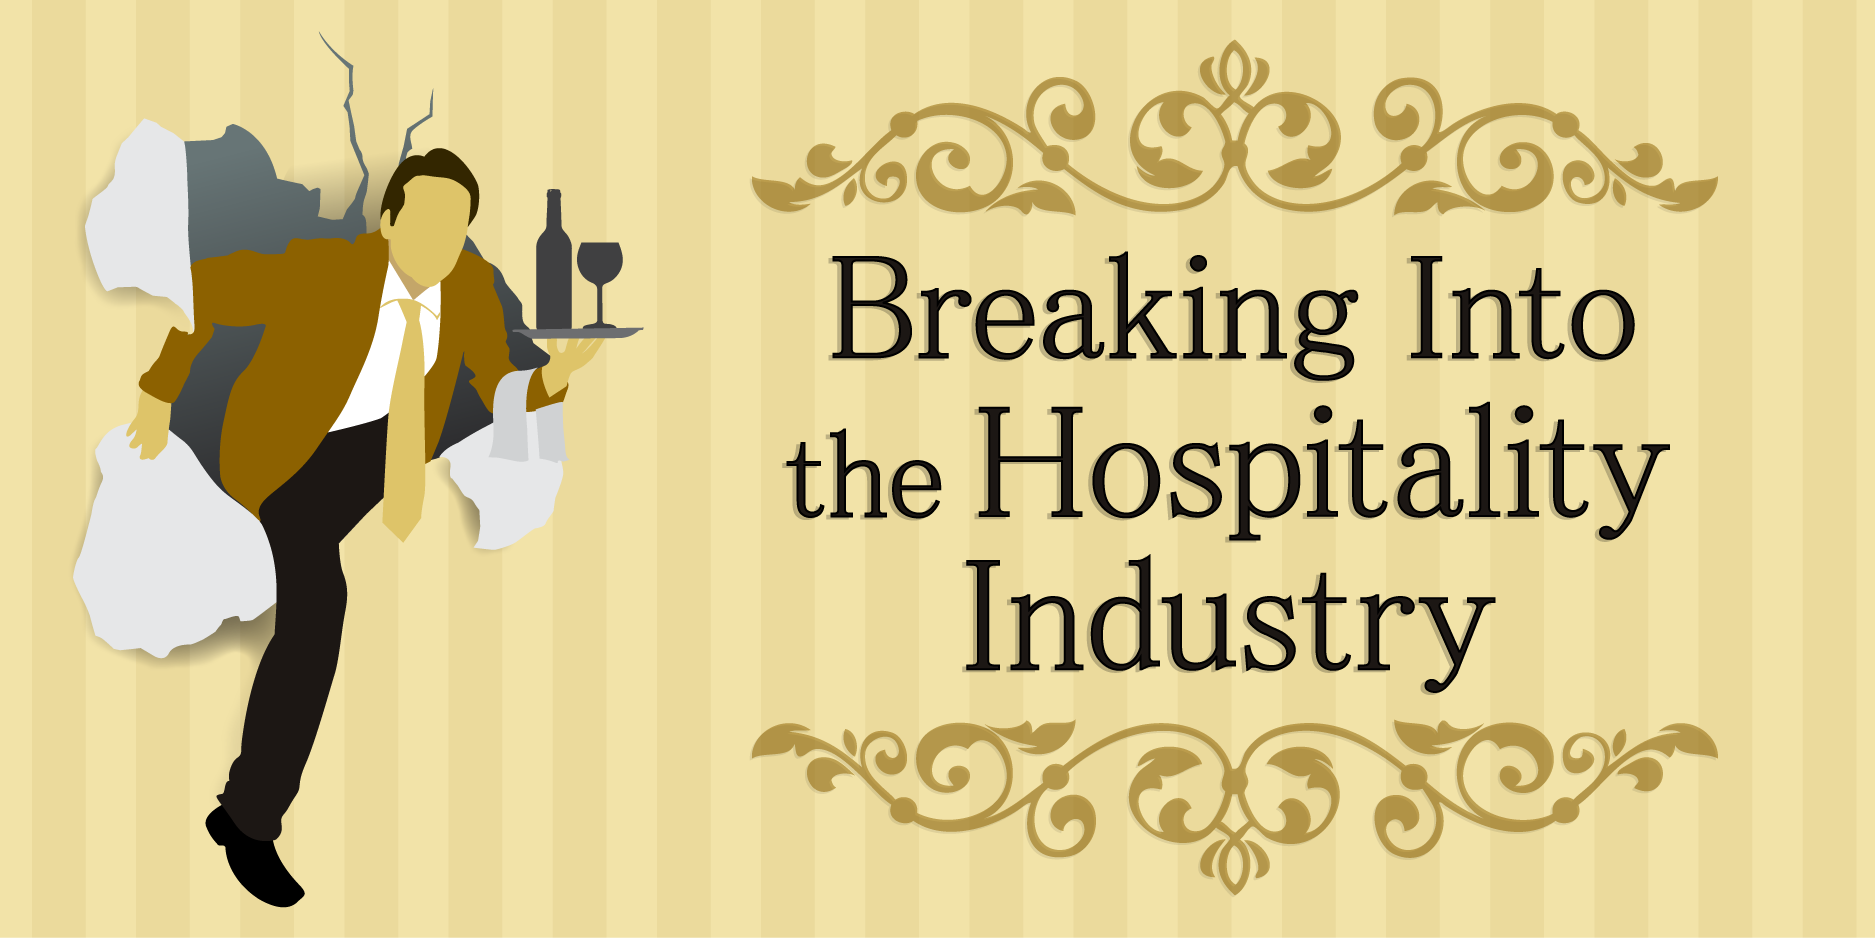 Tourism and hospitality. Hospitality industry. Hospitality industry pdf. Английское слово “Hospitality” (гостеприимство). Hospitality illustrato.